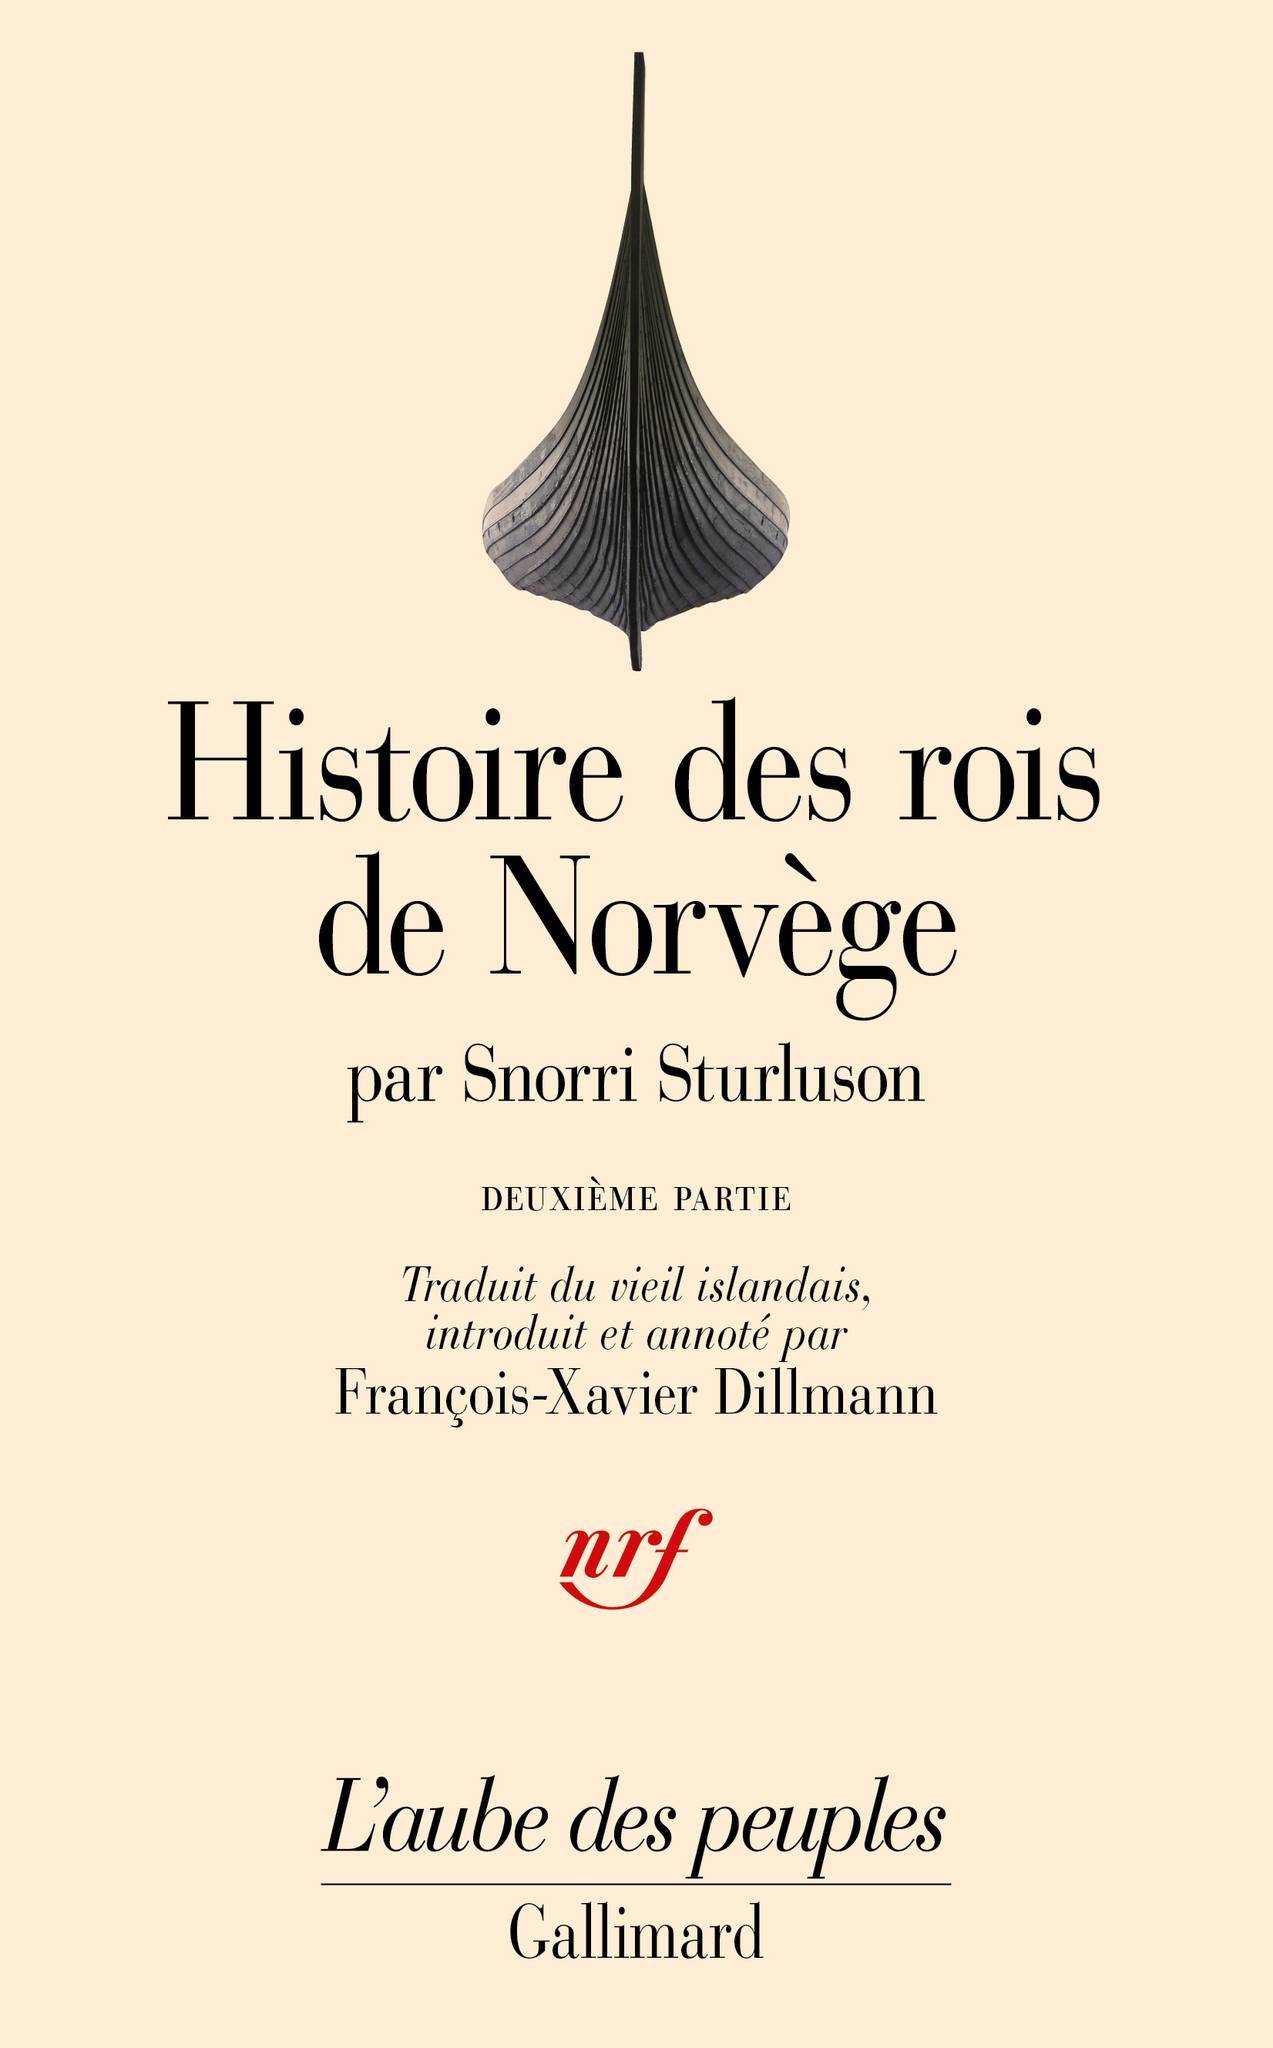 Présentation du deuxième tome en langue française de l'Histoire des rois de Norvège - mynd